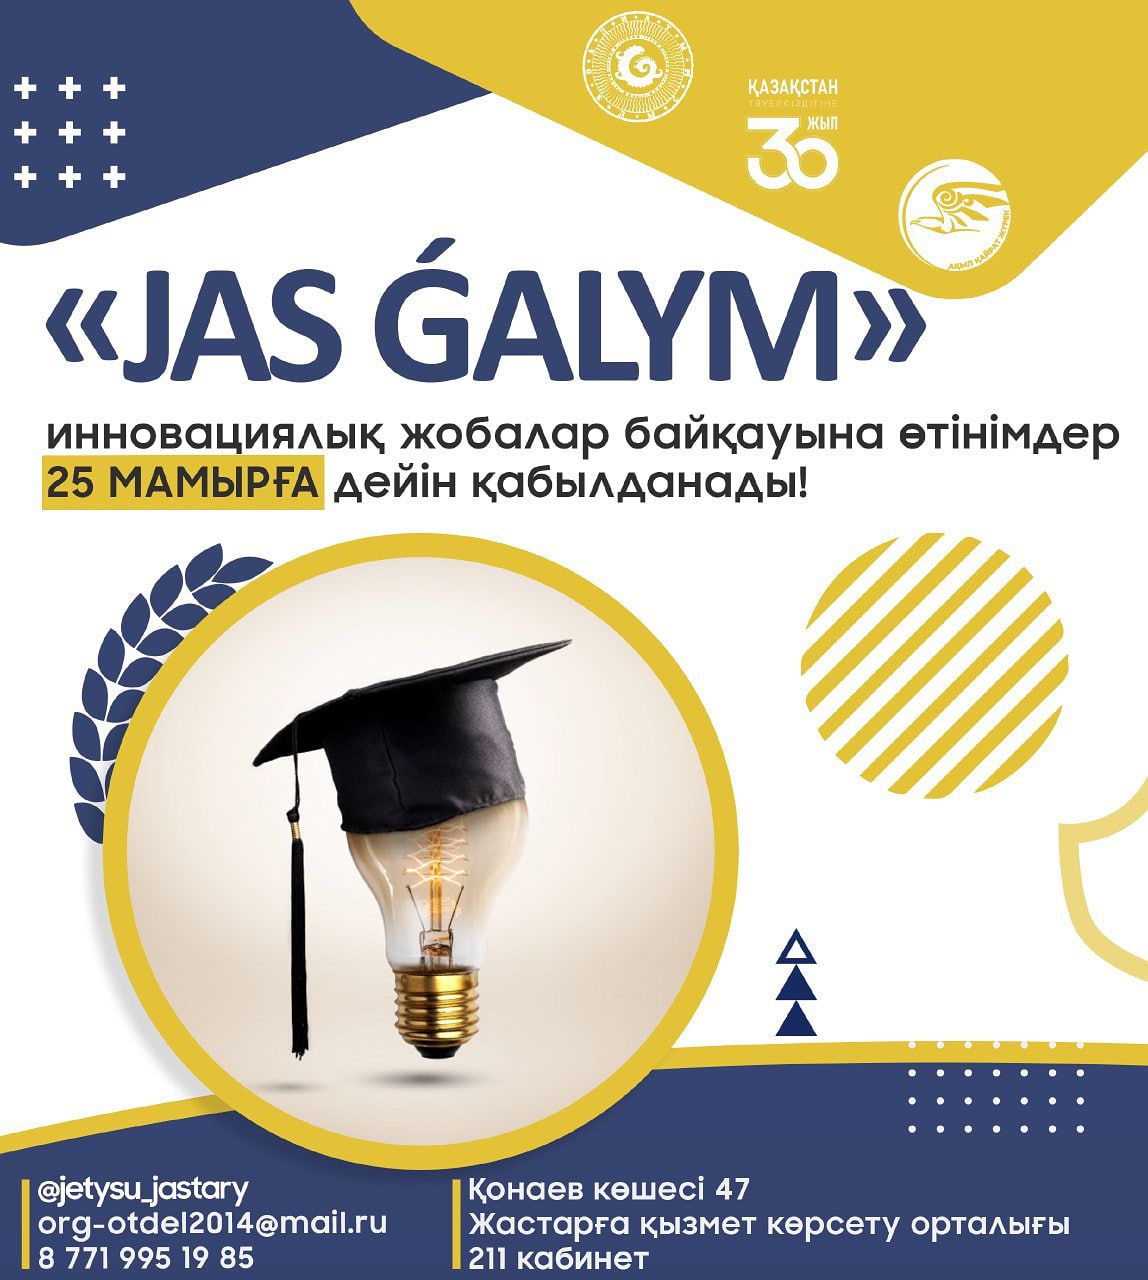 Заявки на конкурс инновационных проектов» JAS GALYM " принимаются до 25 мая